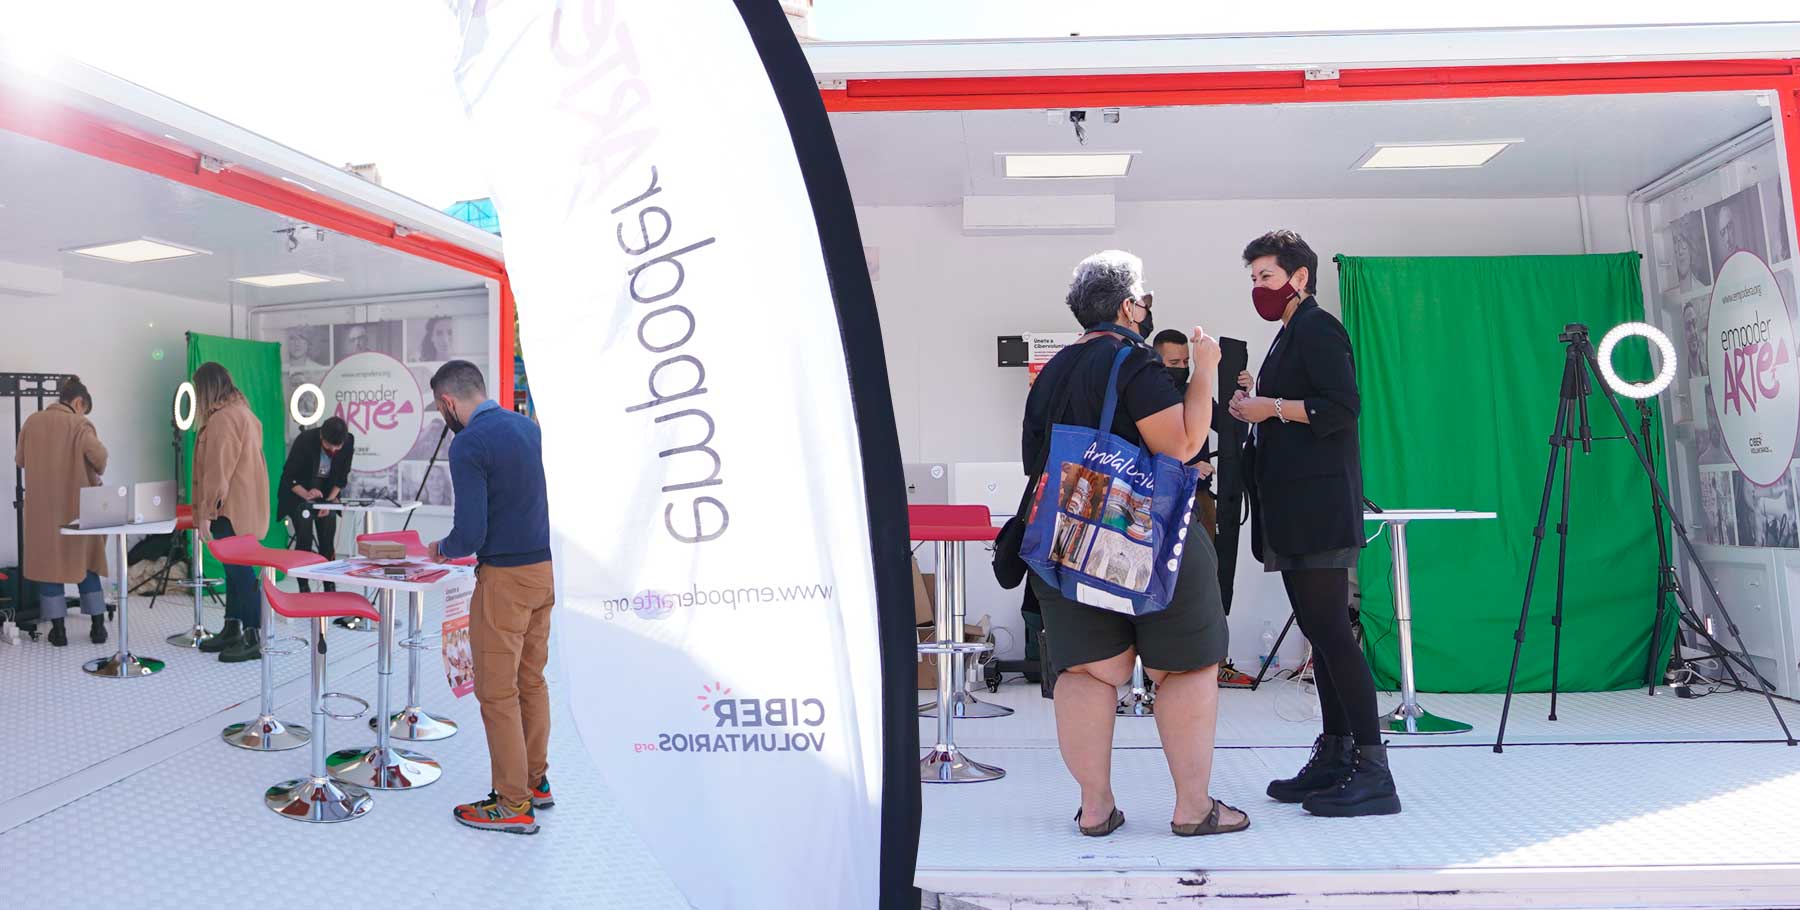 Cibervoluntarios elige Málaga para lanzar #EmpoderArte, con el objetivo de crear la mayor obra de arte digital y colaborativa